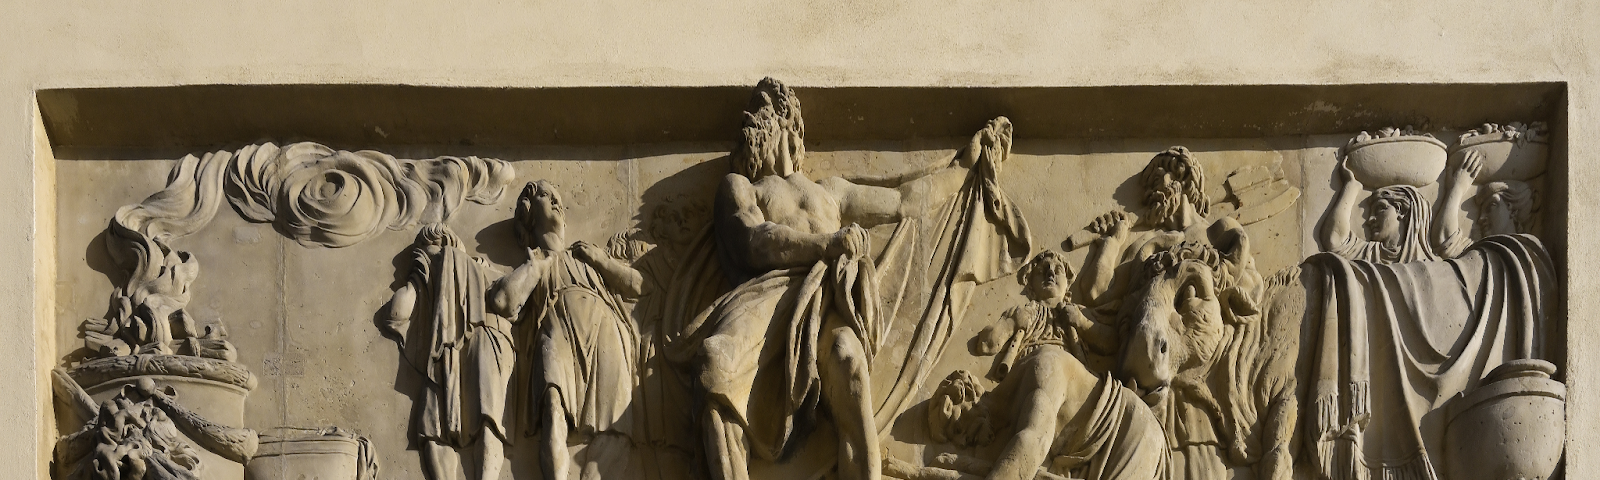 Bas relief depicting scenes from Greek mythology, Brandenburg Gate, Pariser Square, Under Linden Cave, Berlin, Germany